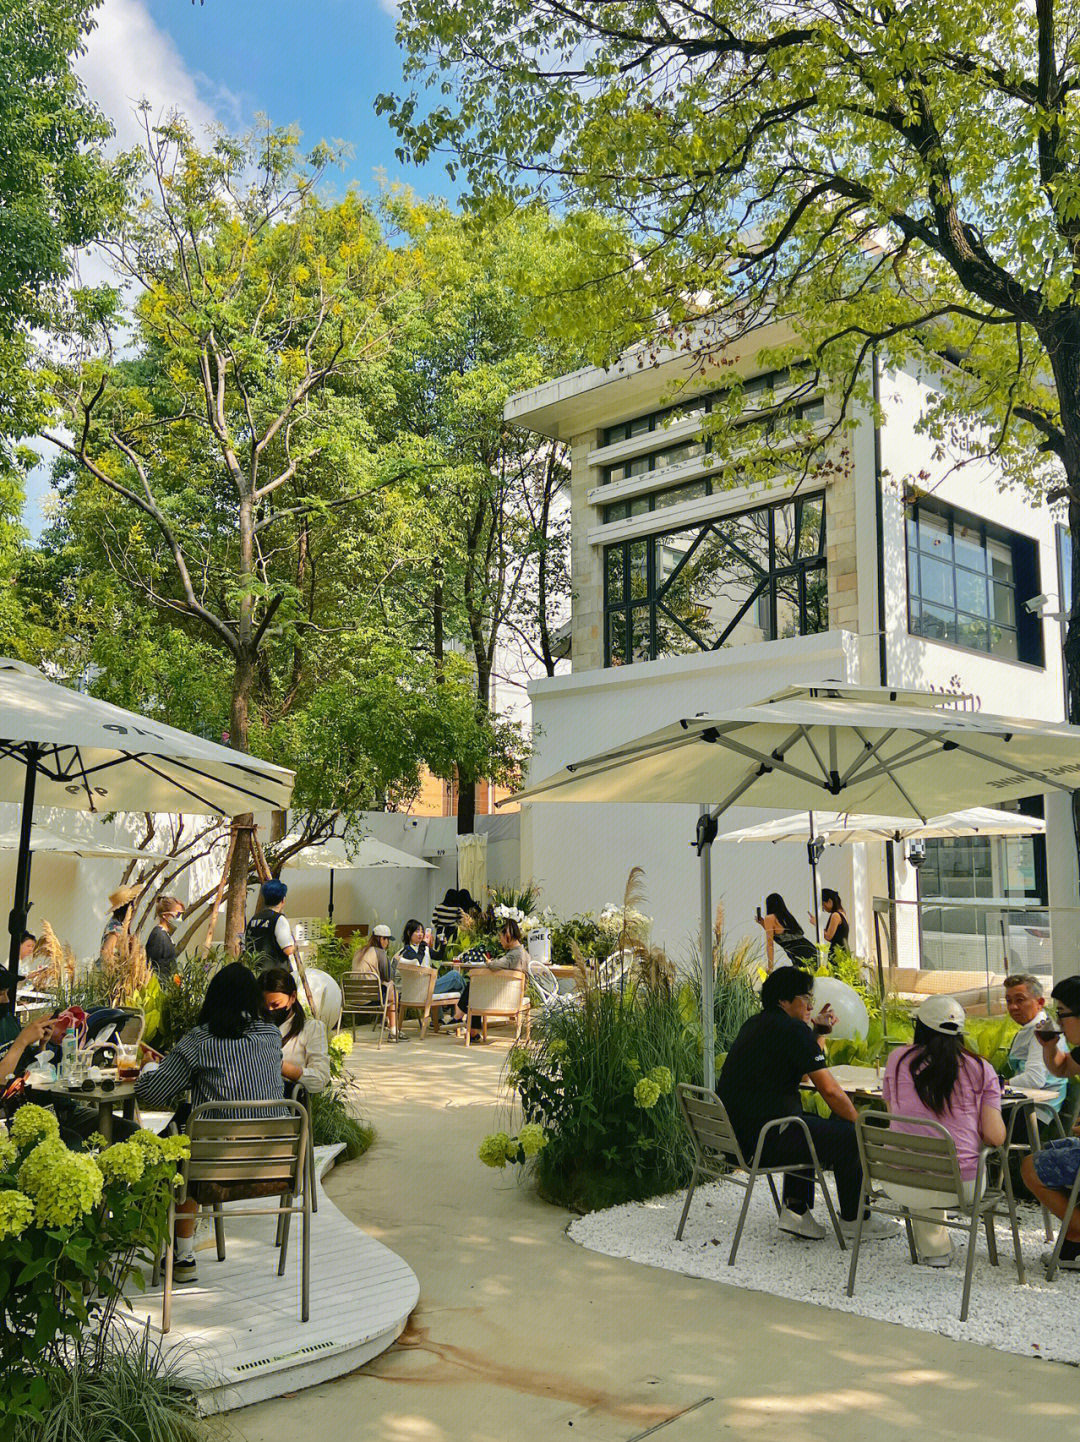 韩国街新晋绝美花园庭院咖啡馆氛围感爆棚